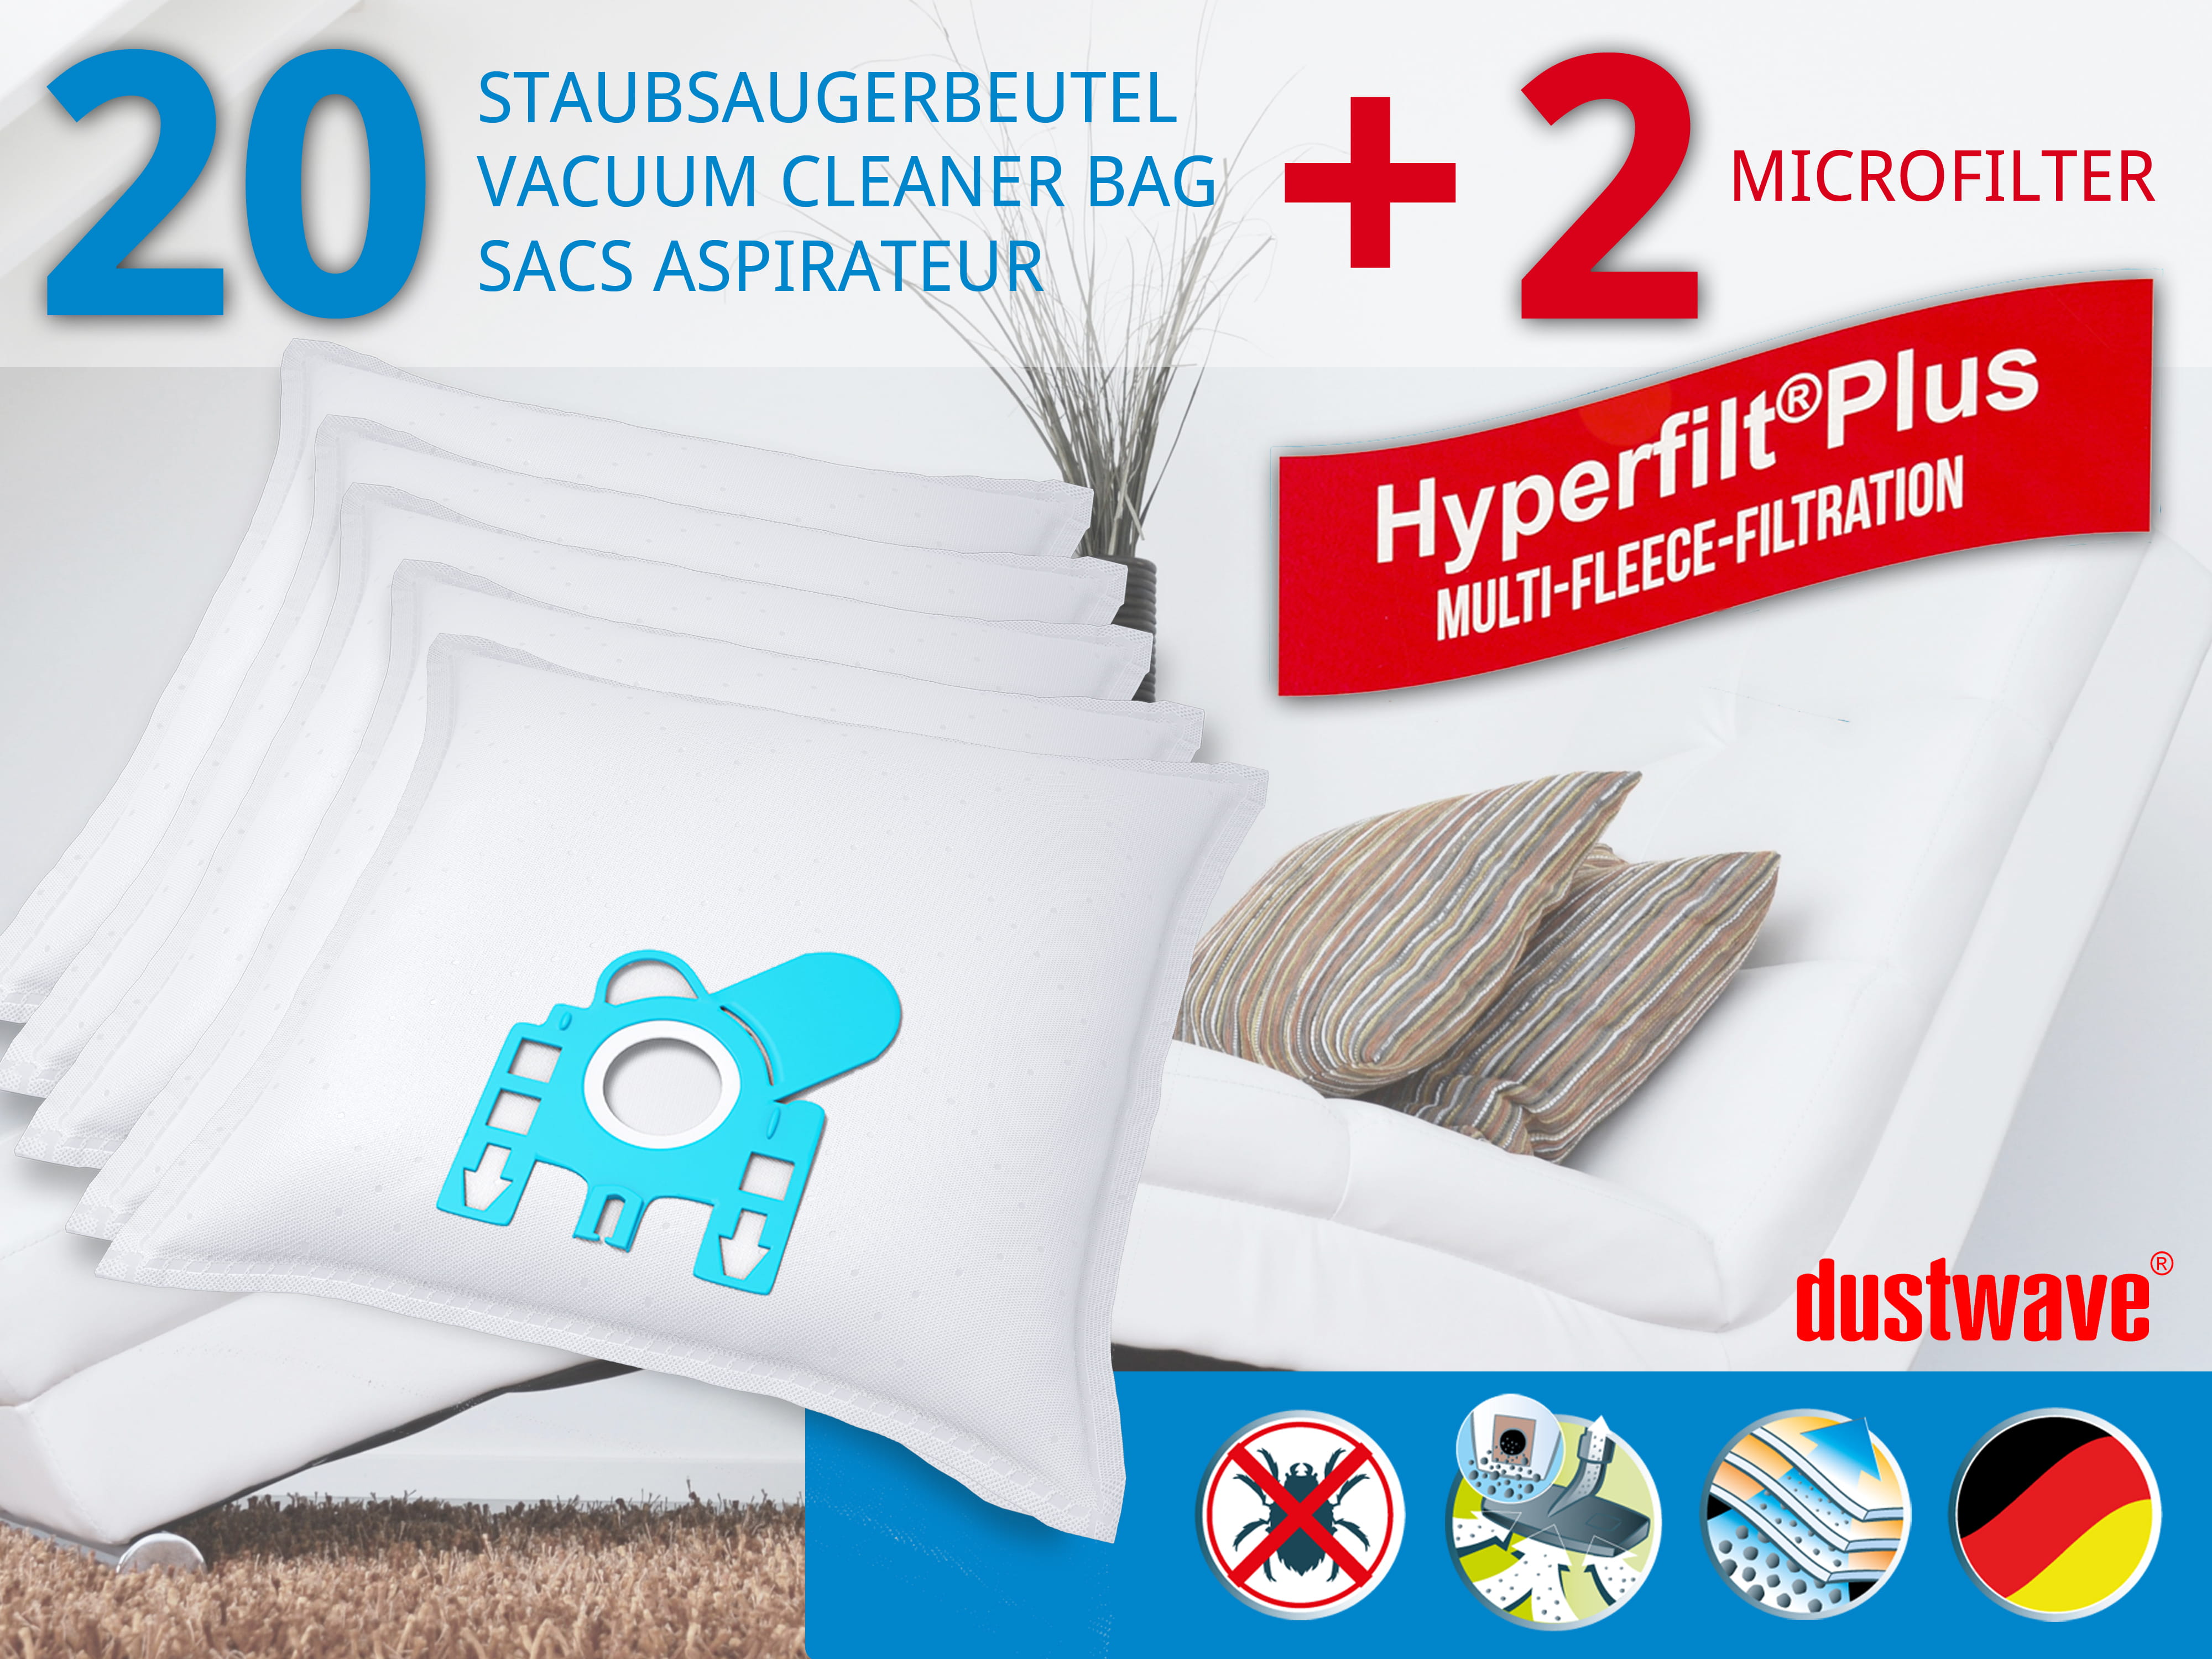 Dustwave® 20 Staubsaugerbeutel für Hoover T6715 / TRT6715 - hocheffizient, mehrlagiges Mikrovlies mit Hygieneverschluss - Made in Germany